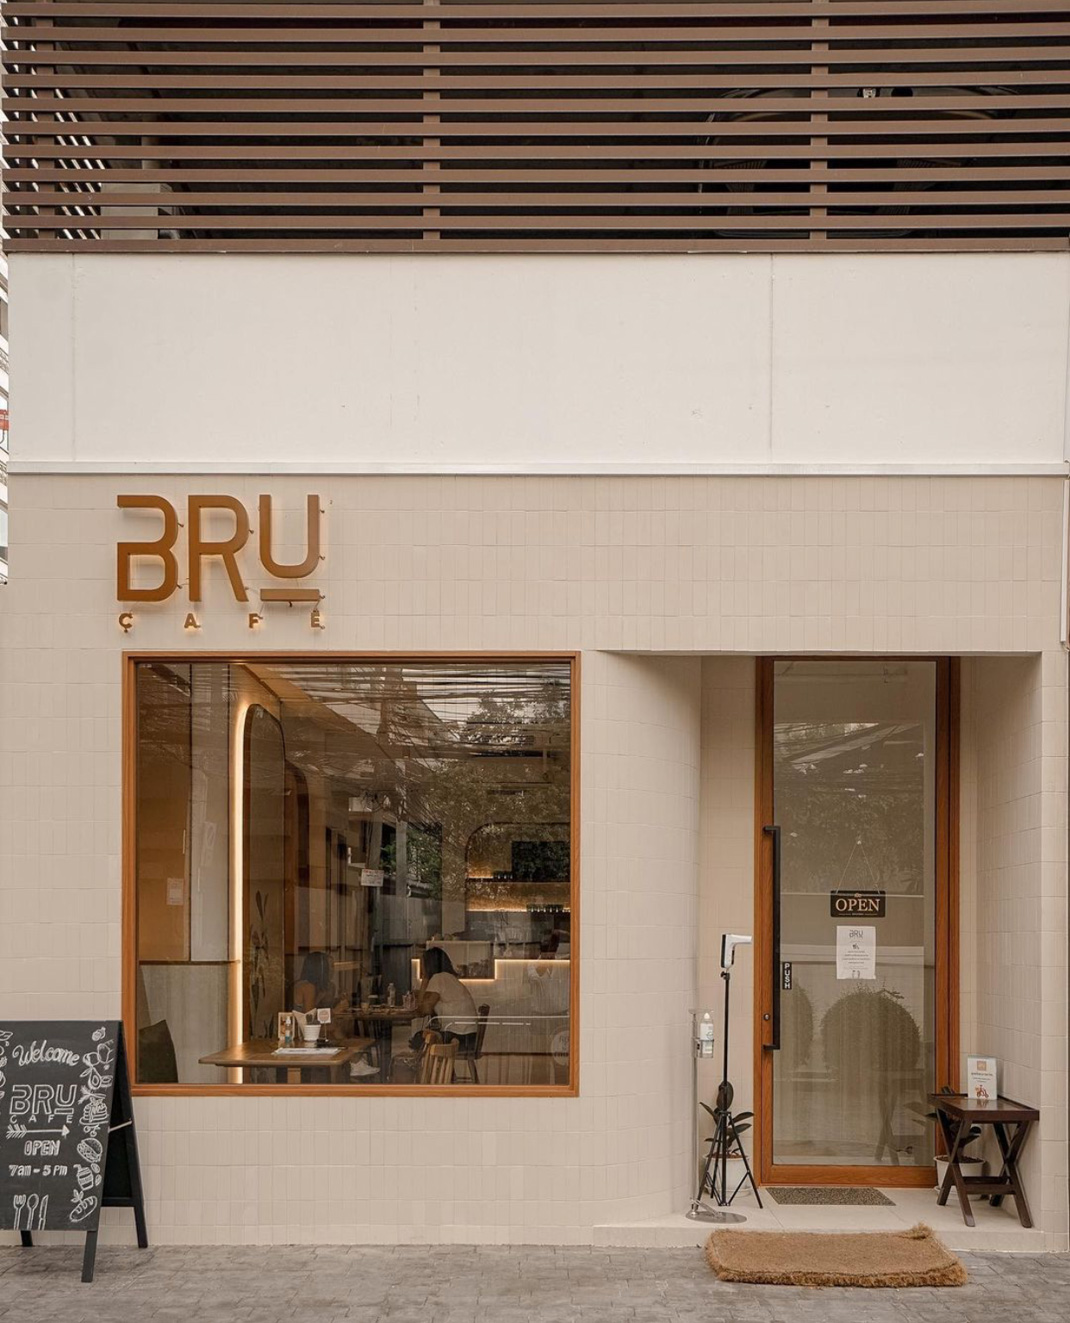 咖啡店BRU20_Cafe 泰国 曼谷 咖啡店 瓷砖 logo设计 vi设计 空间设计